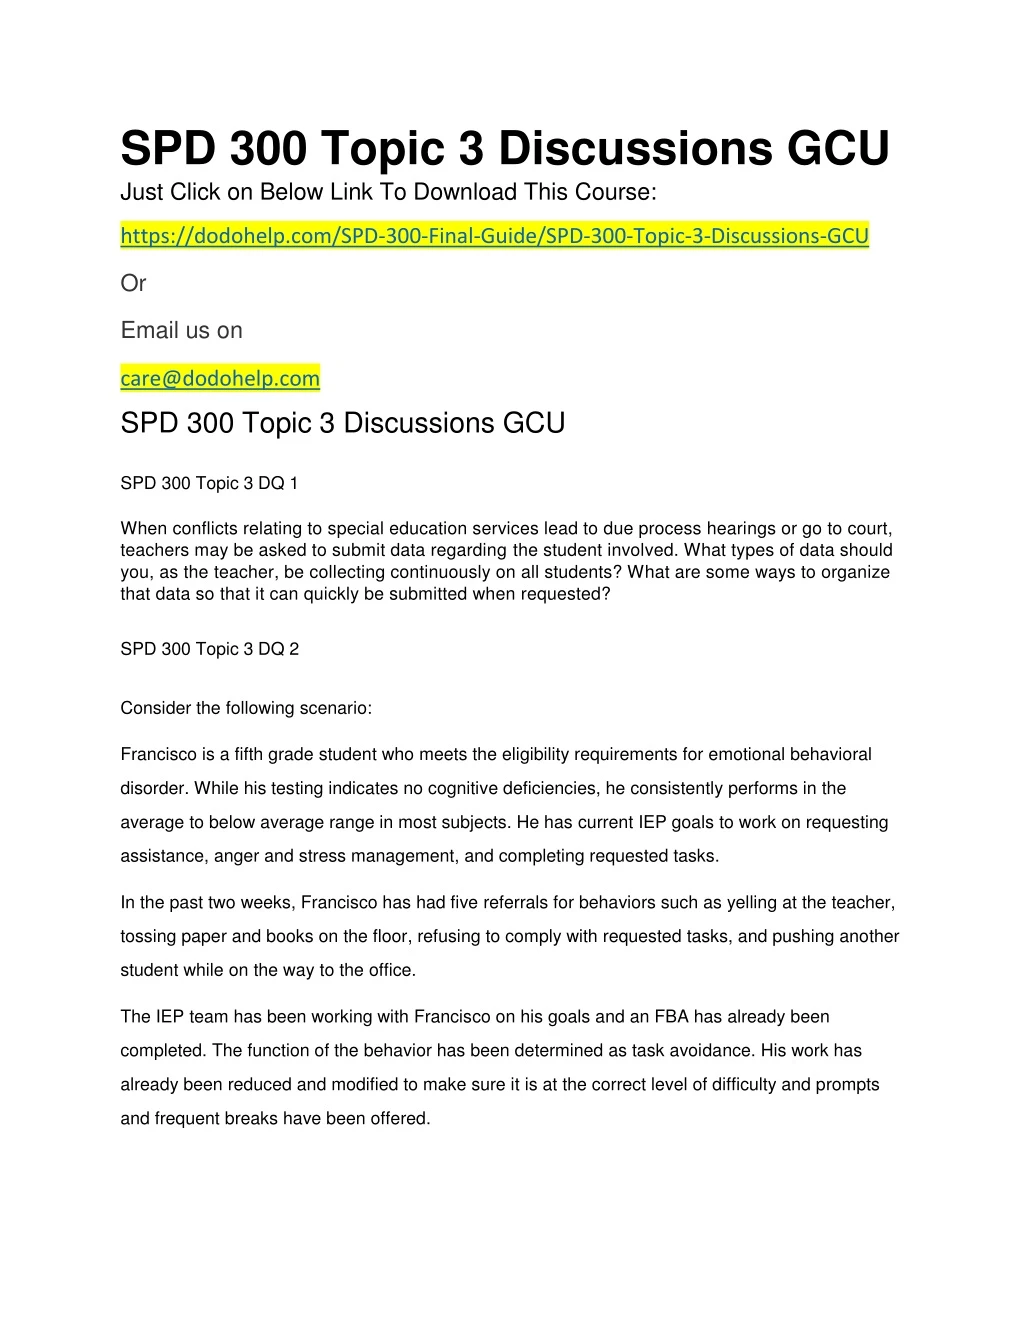 spd 300 topic 3 discussions gcu just click